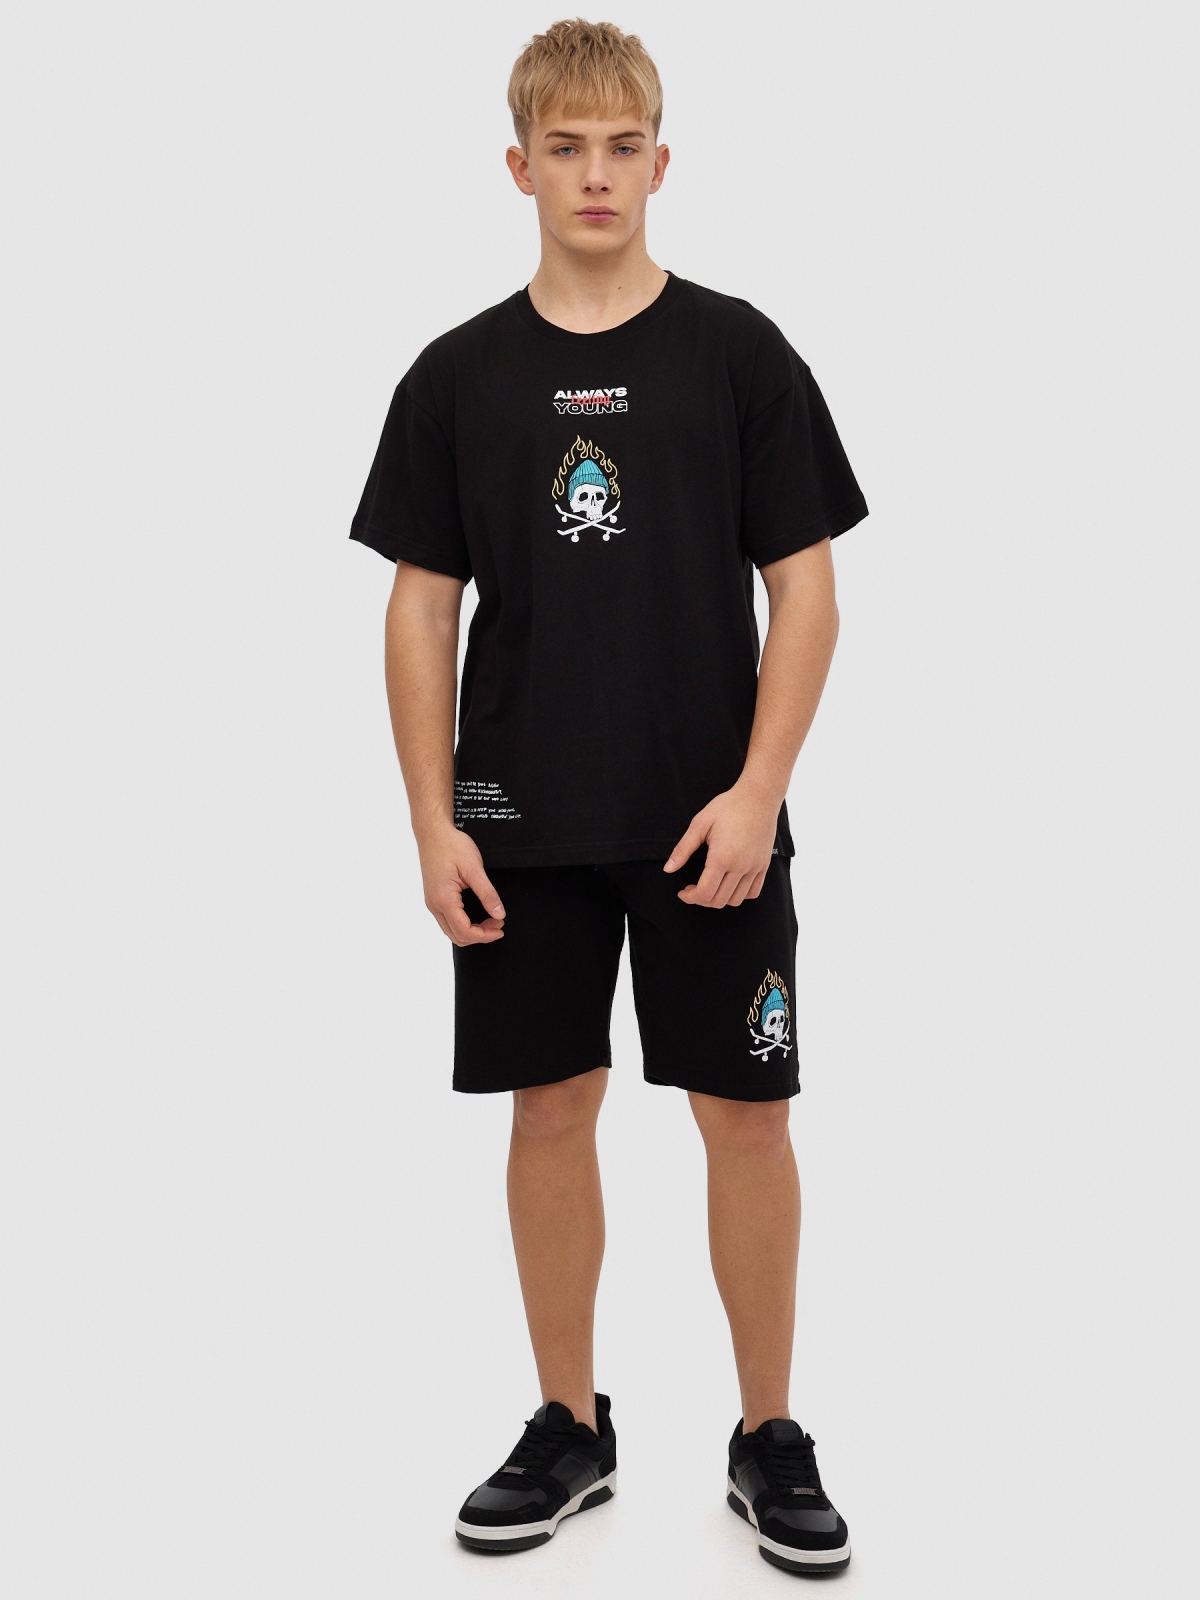 Skateboarder skull t-shirt black front view